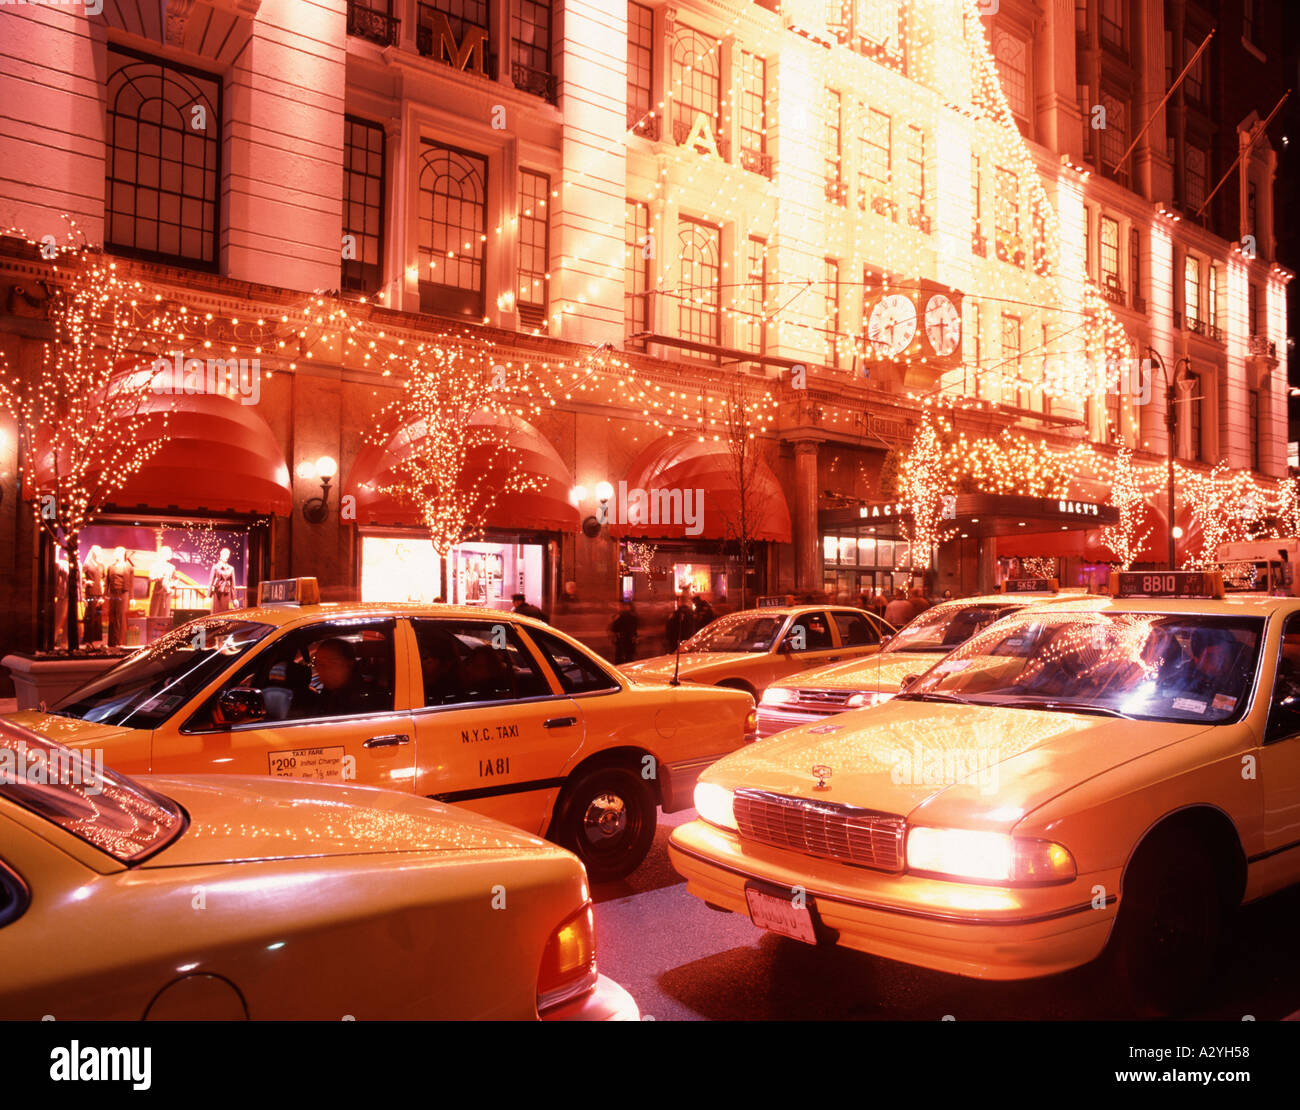 Macys, Manhattan, New York, USA Stock Photo